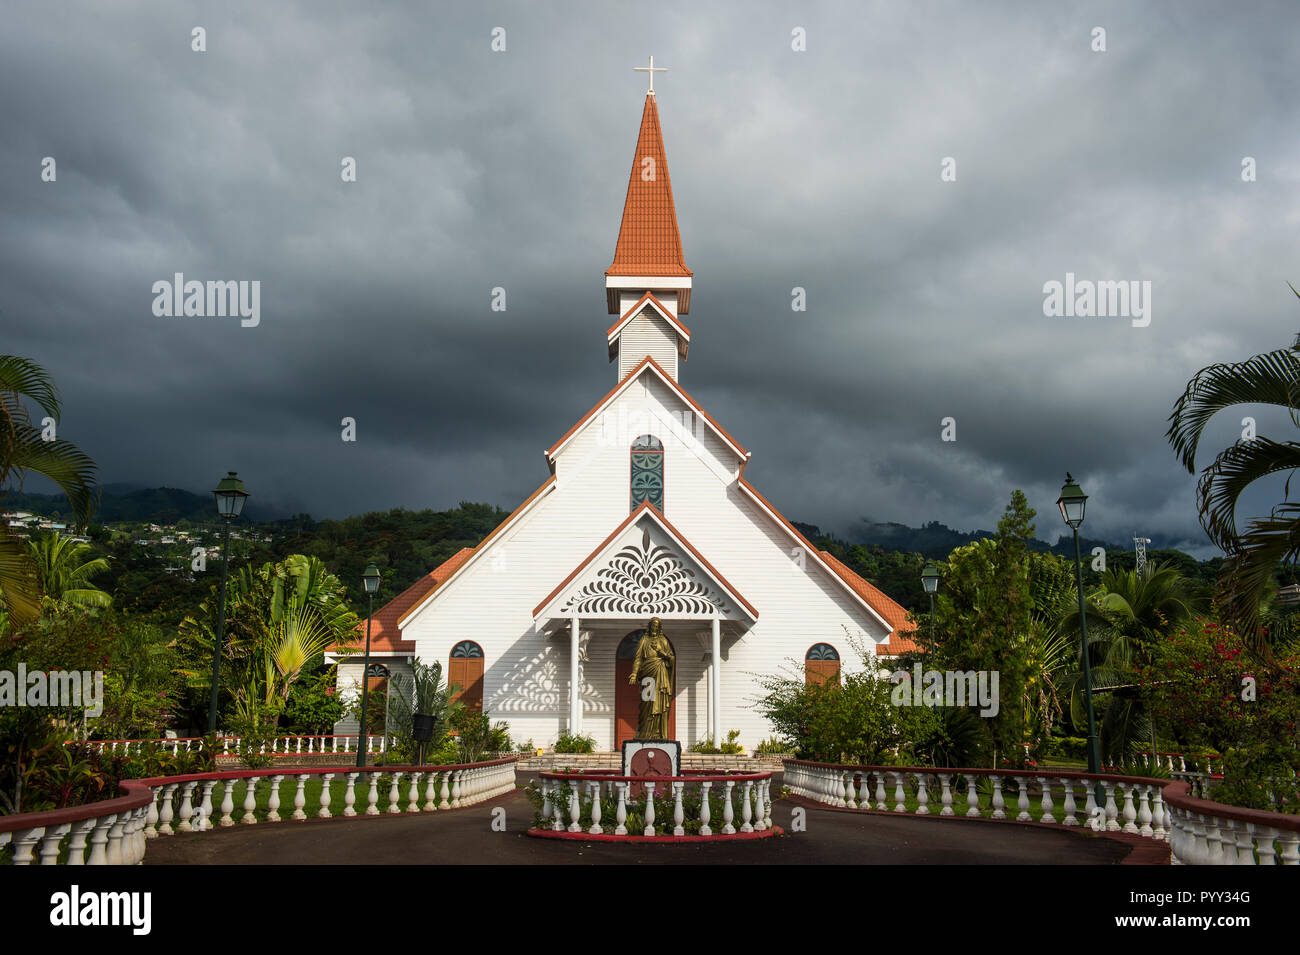 Première église du Sacré-cœur, auch La première église du Sacré-cœur, Tahiti, Polynésie Française Banque D'Images